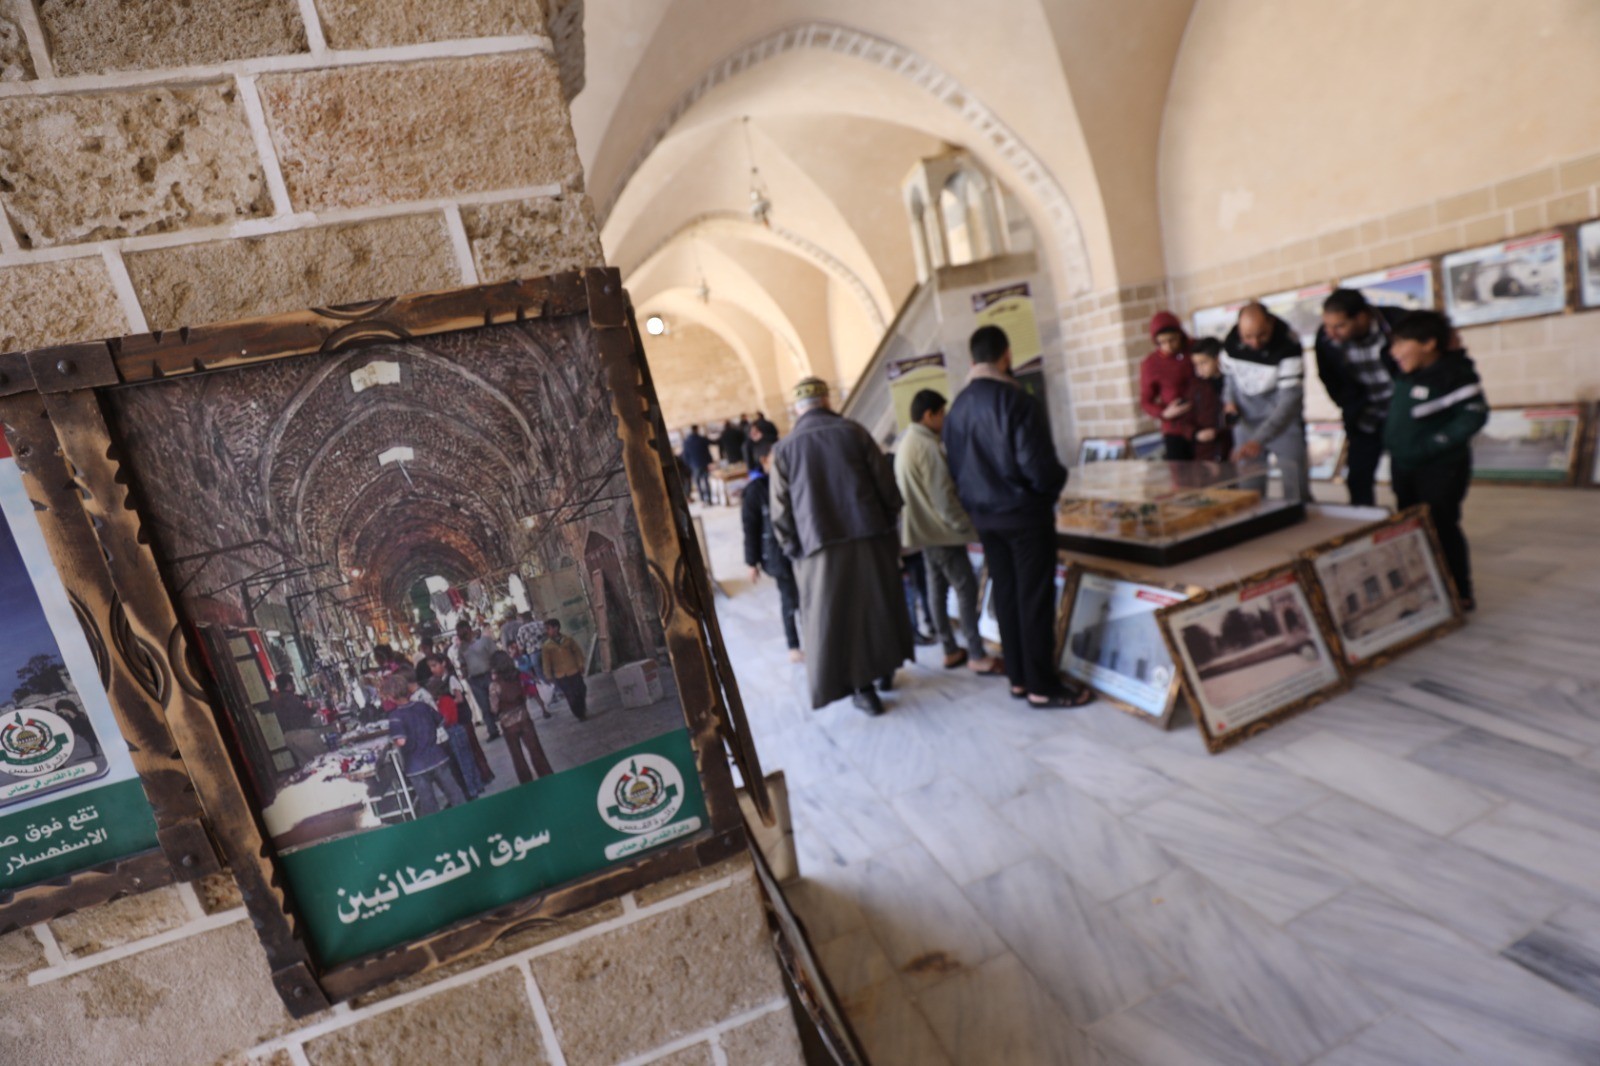 شاهد: إطلاق فعاليات "أسبوع القدس العالمي" من المسجد العمري بغزة